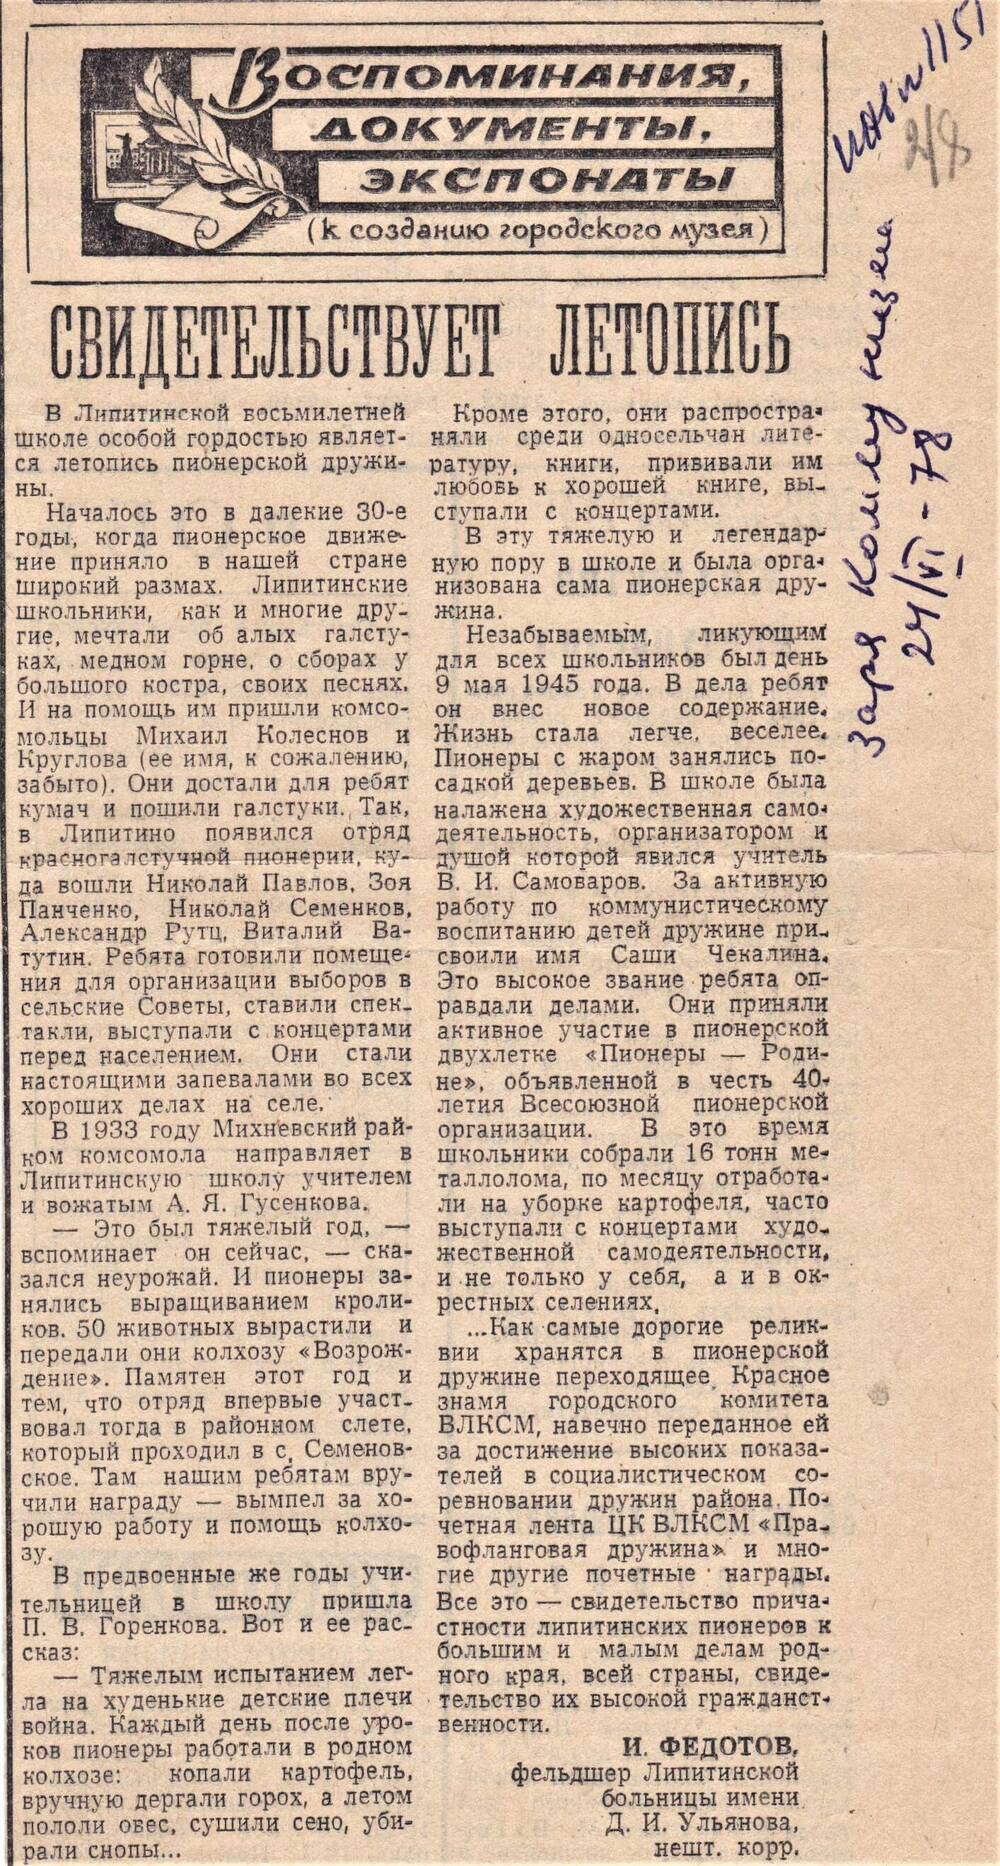 Статья  Свидетельствует летопись И. Федотова, фельдшера Липитинской больницы, из газеты Заря Коммунизма